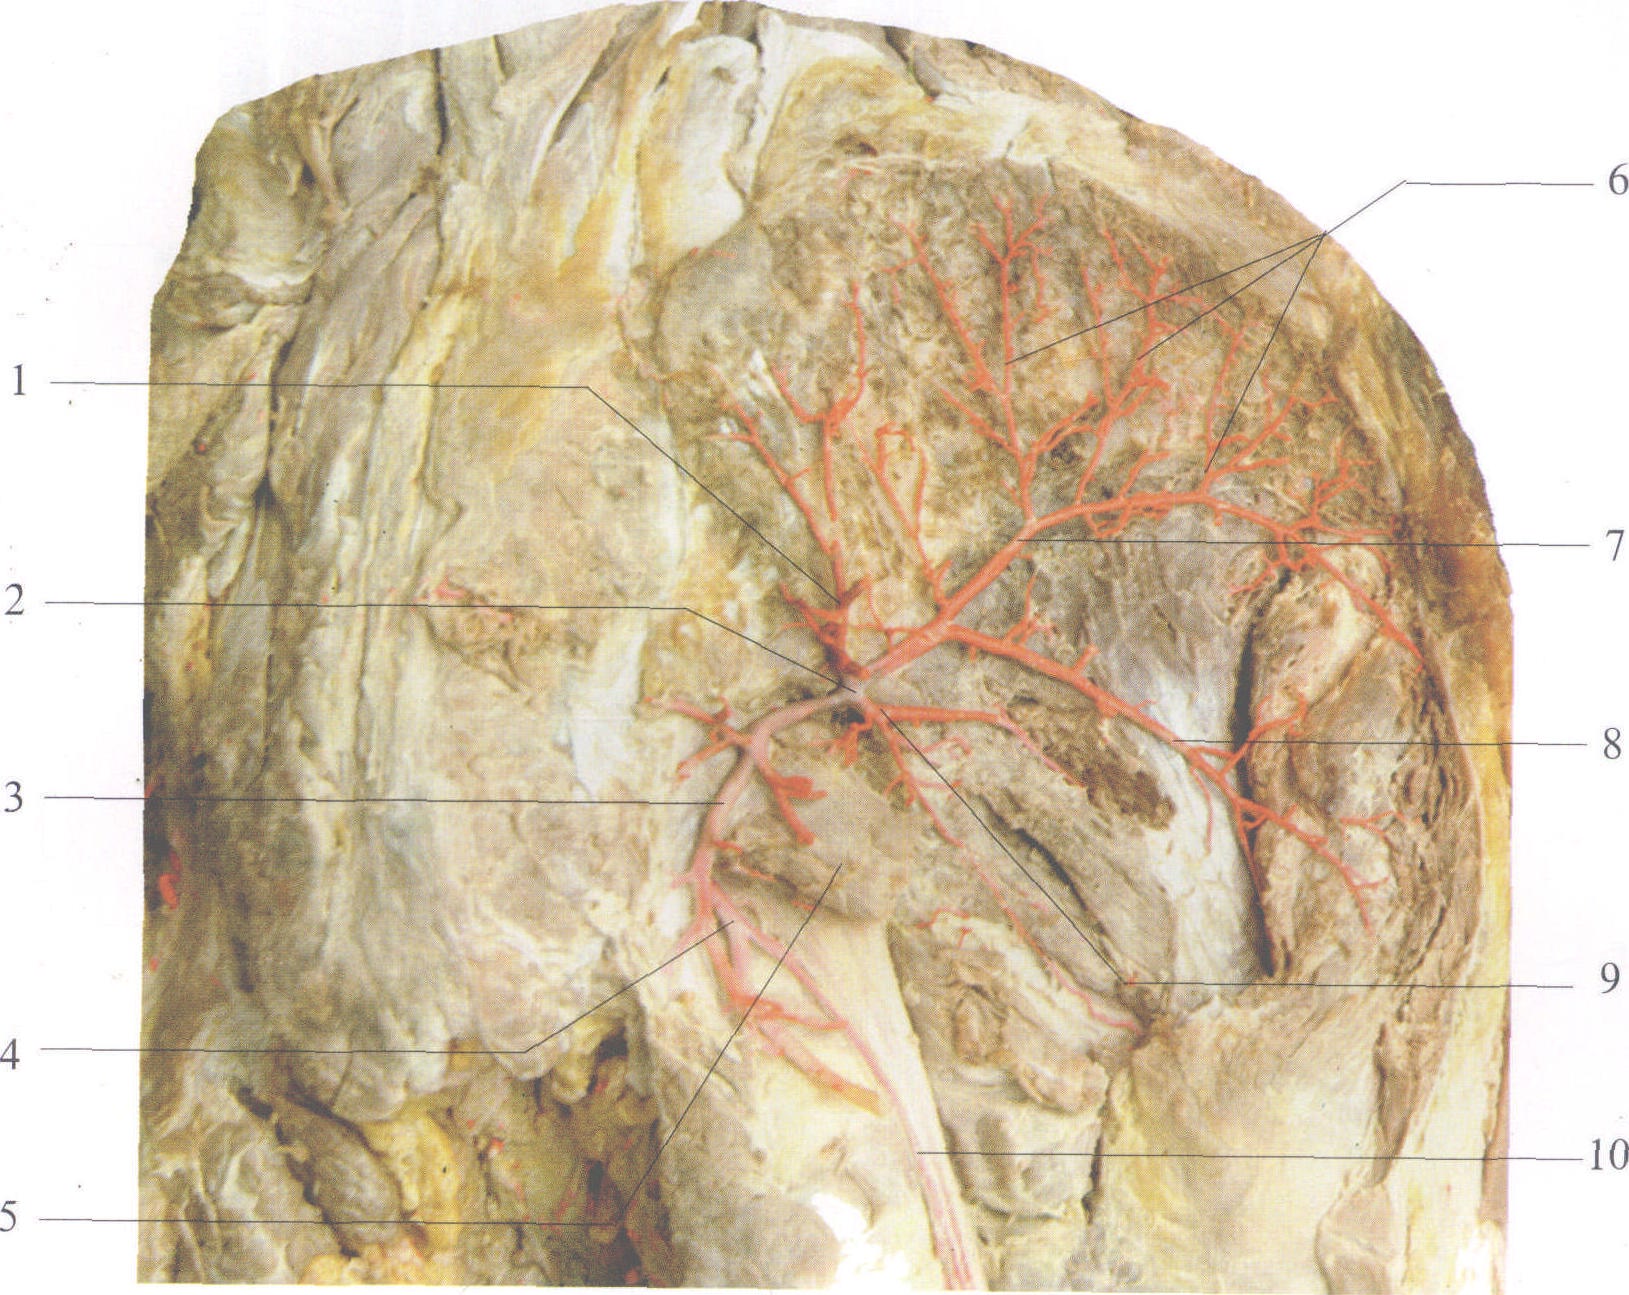 臀部血管解剖图图片